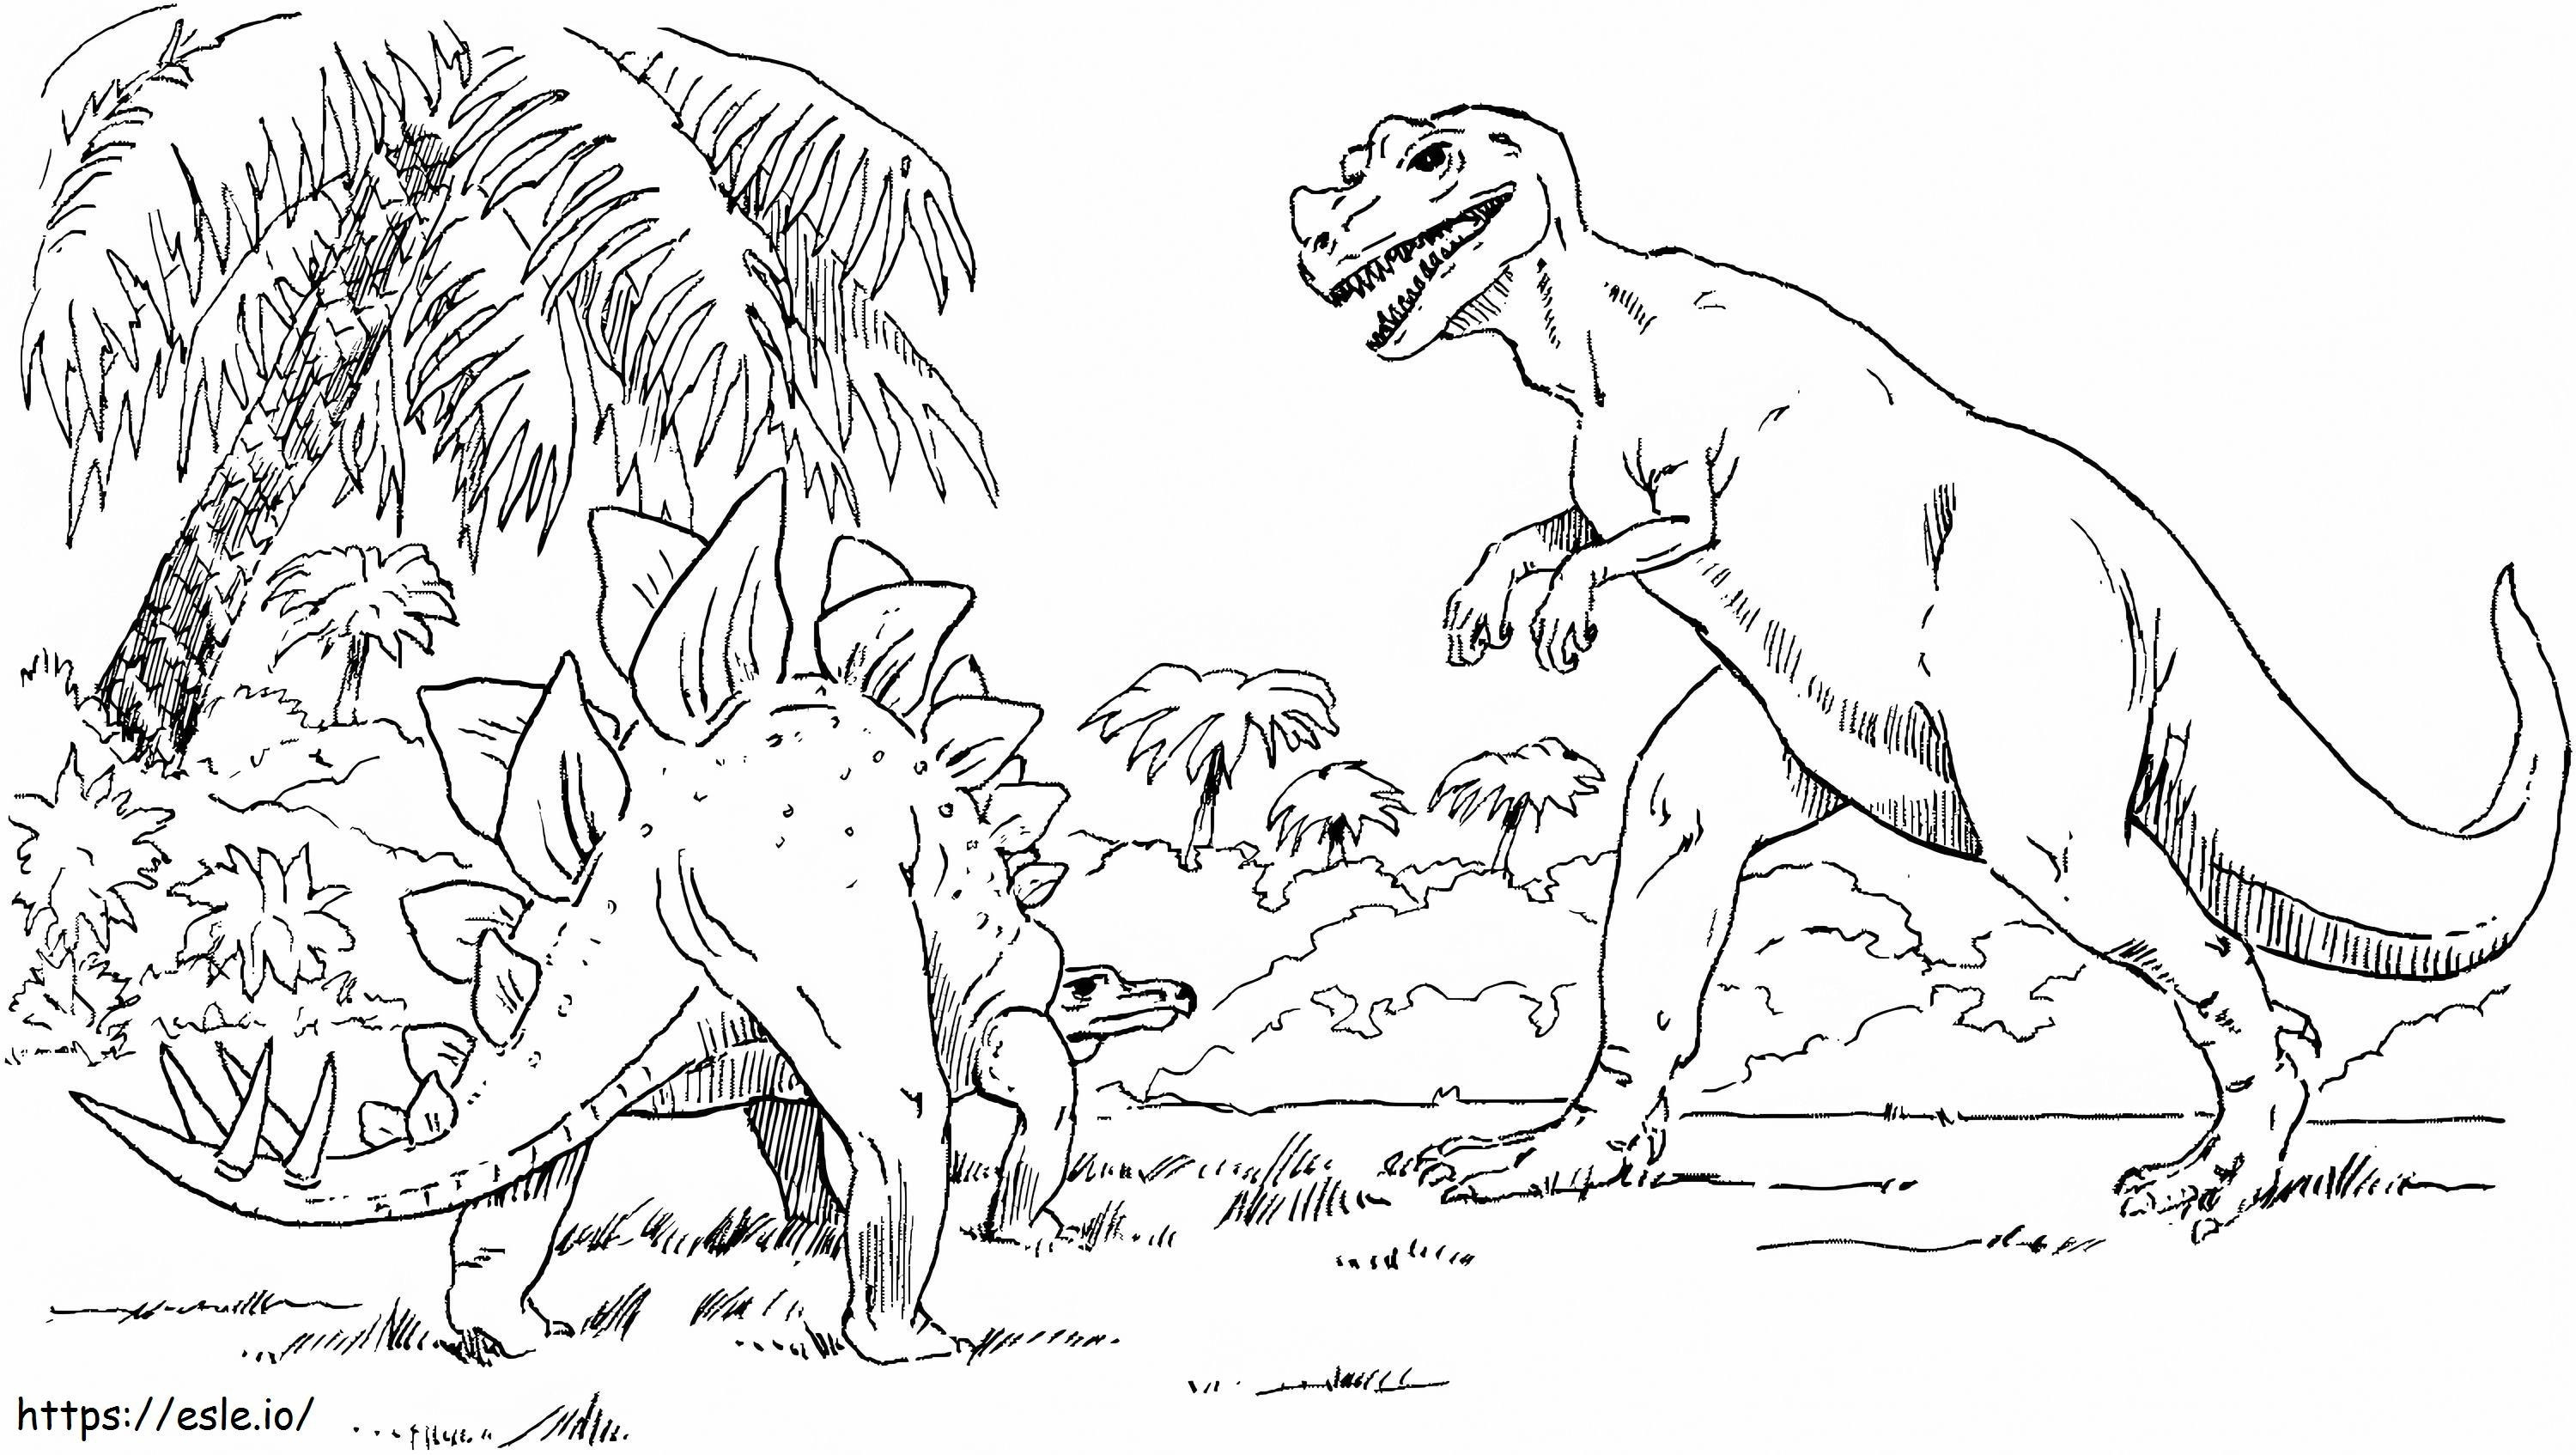 Tyrannosaurus And Stegosaurus coloring page